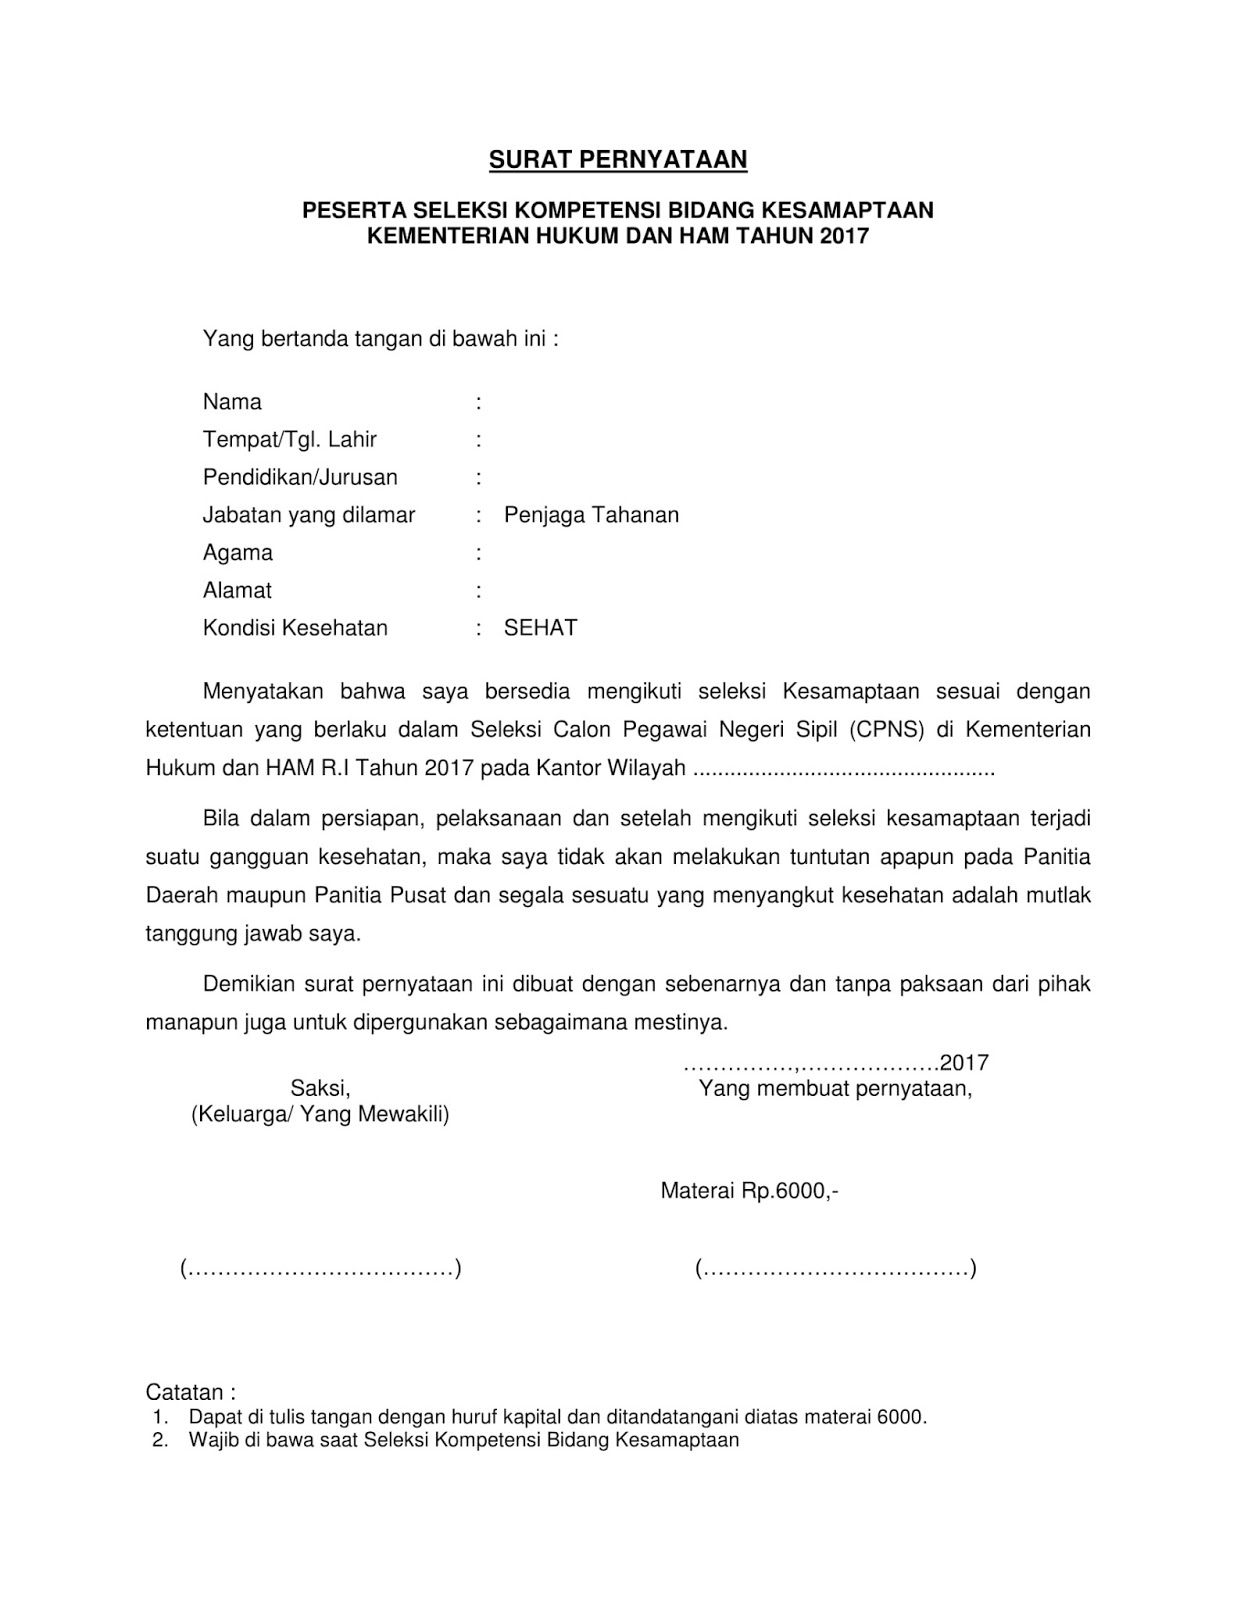 Contoh Surat Pernyataan Seleksi Kesamaptaan CPNS 